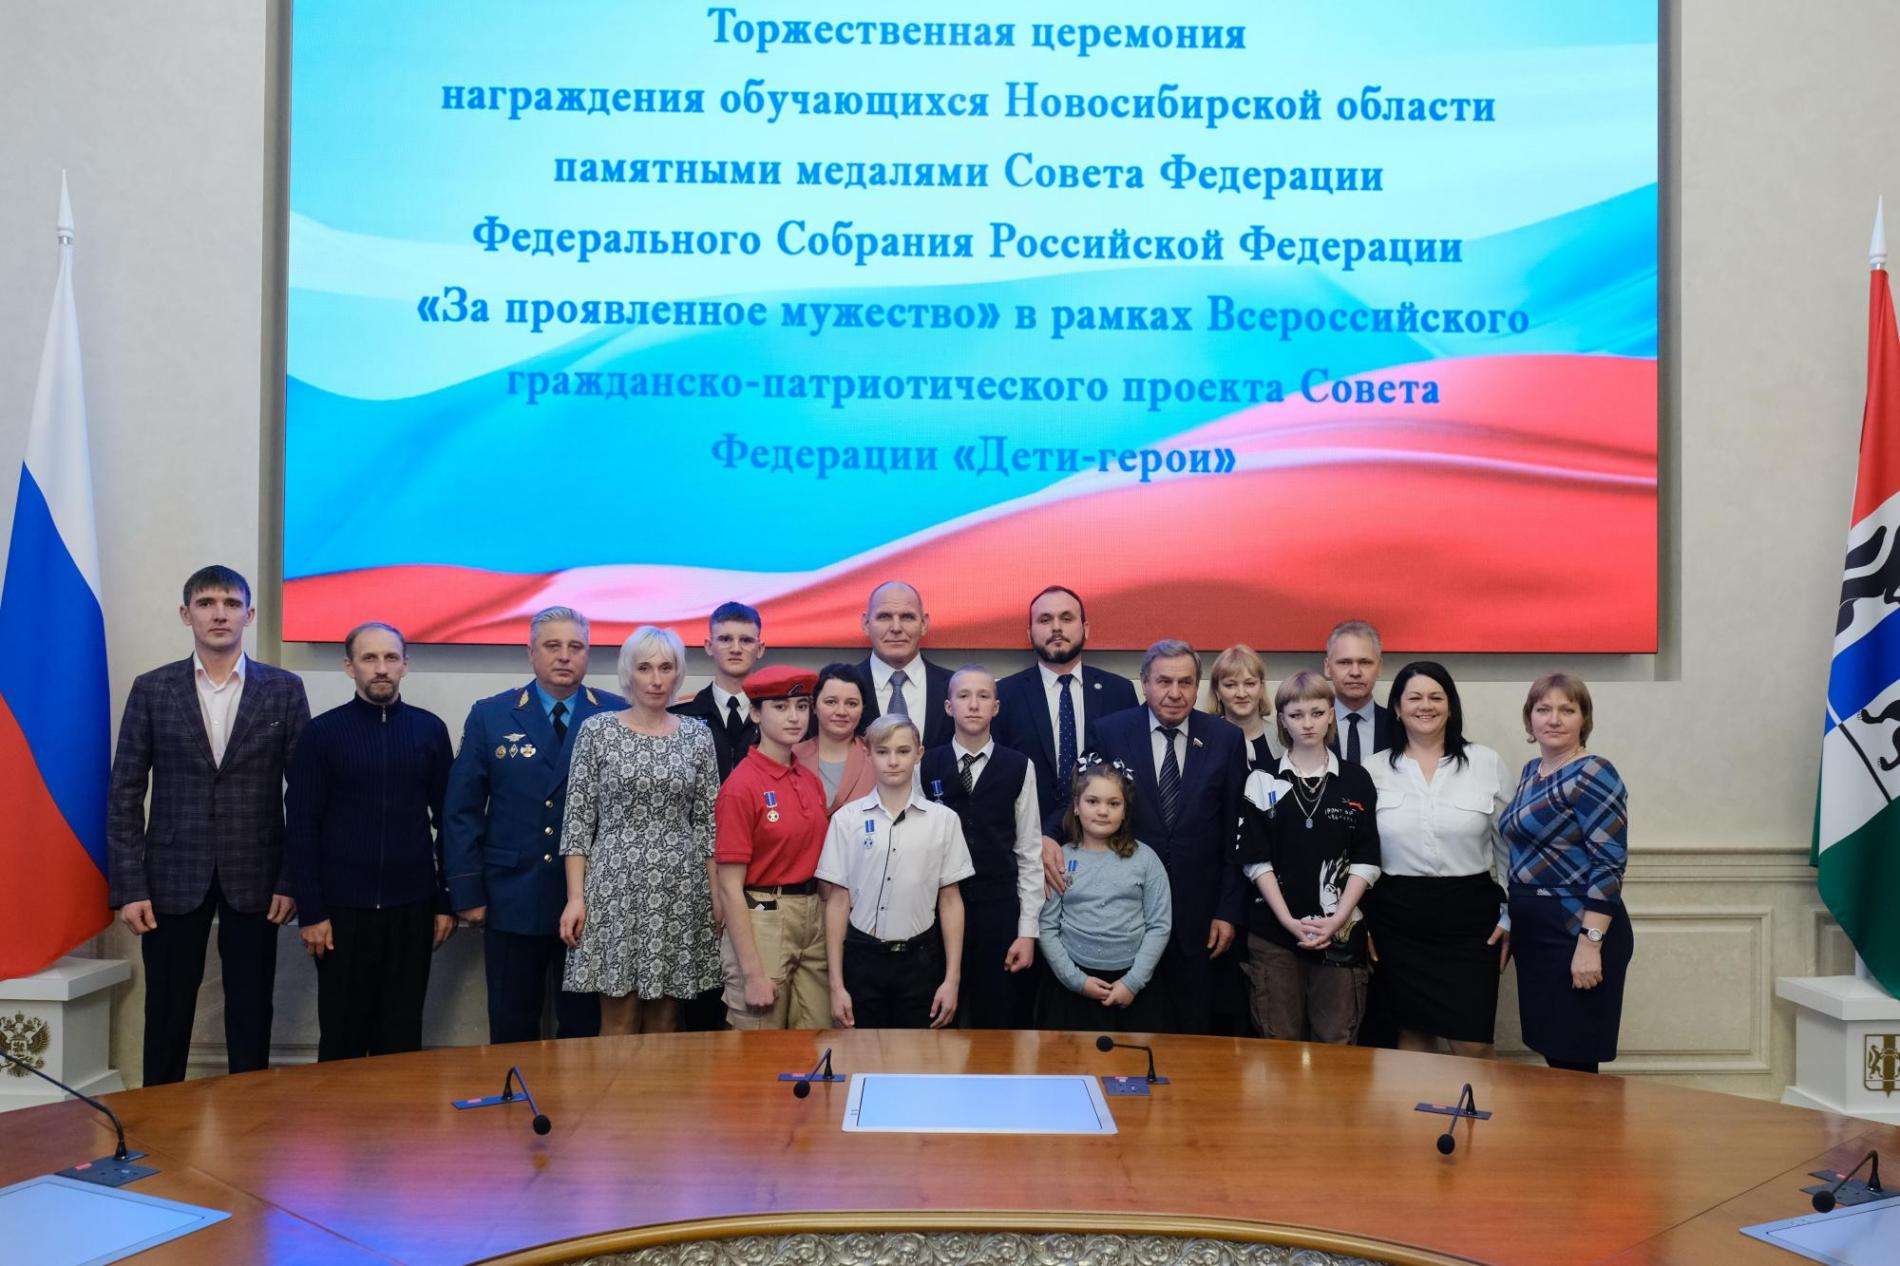 Шесть юных героев из Новосибирска получили награды от Совета Федерации